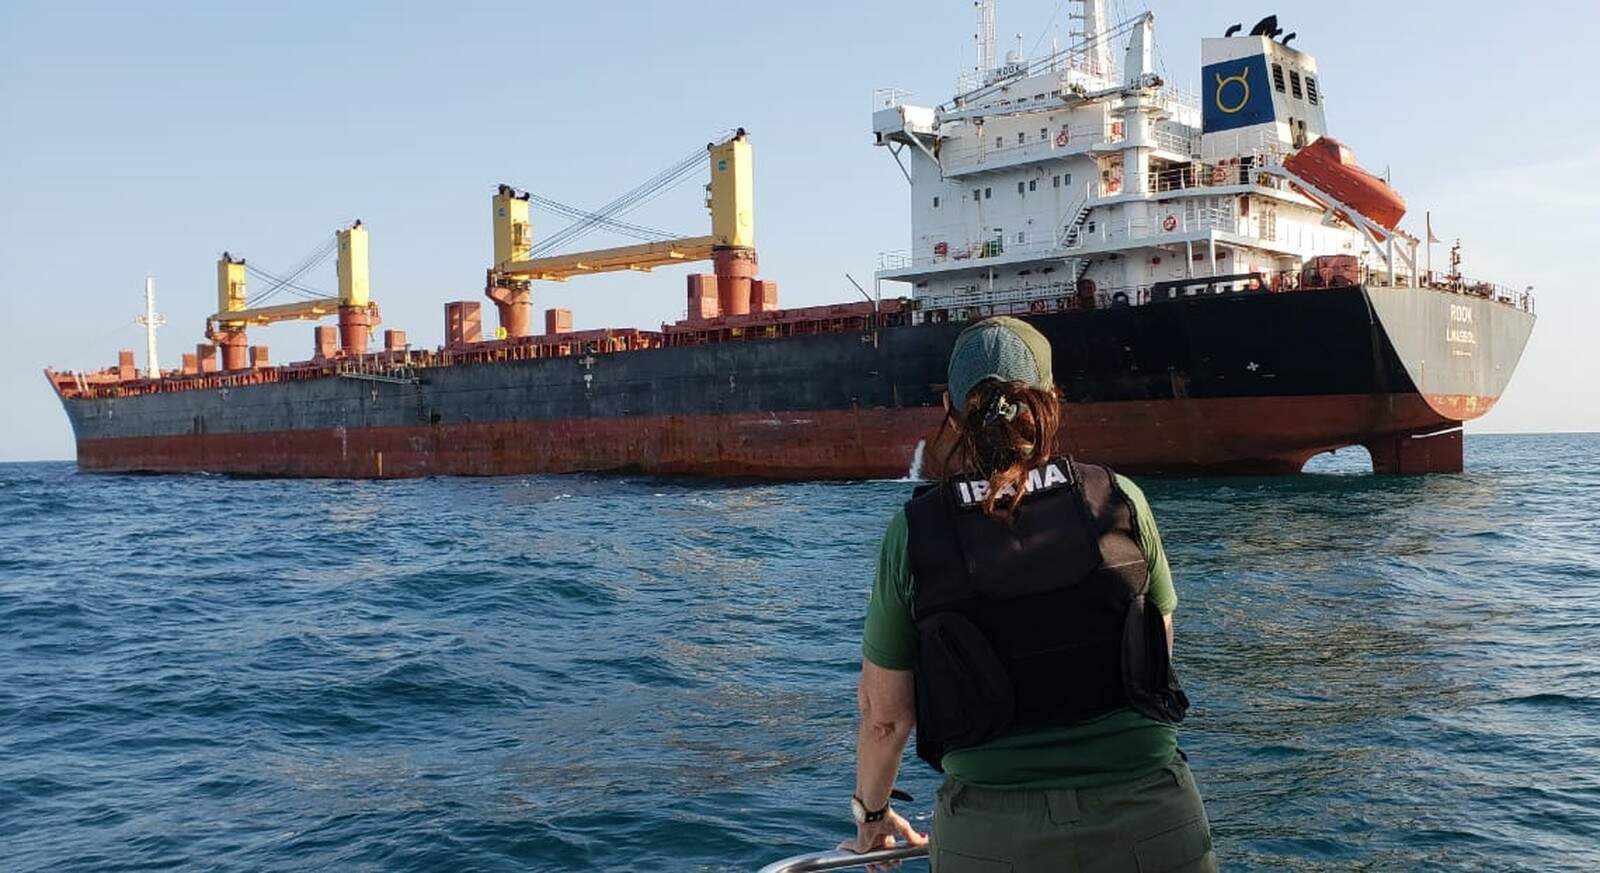 Ibama multou em R$ 1 milhão navio que despejou resíduos no mar em Santos